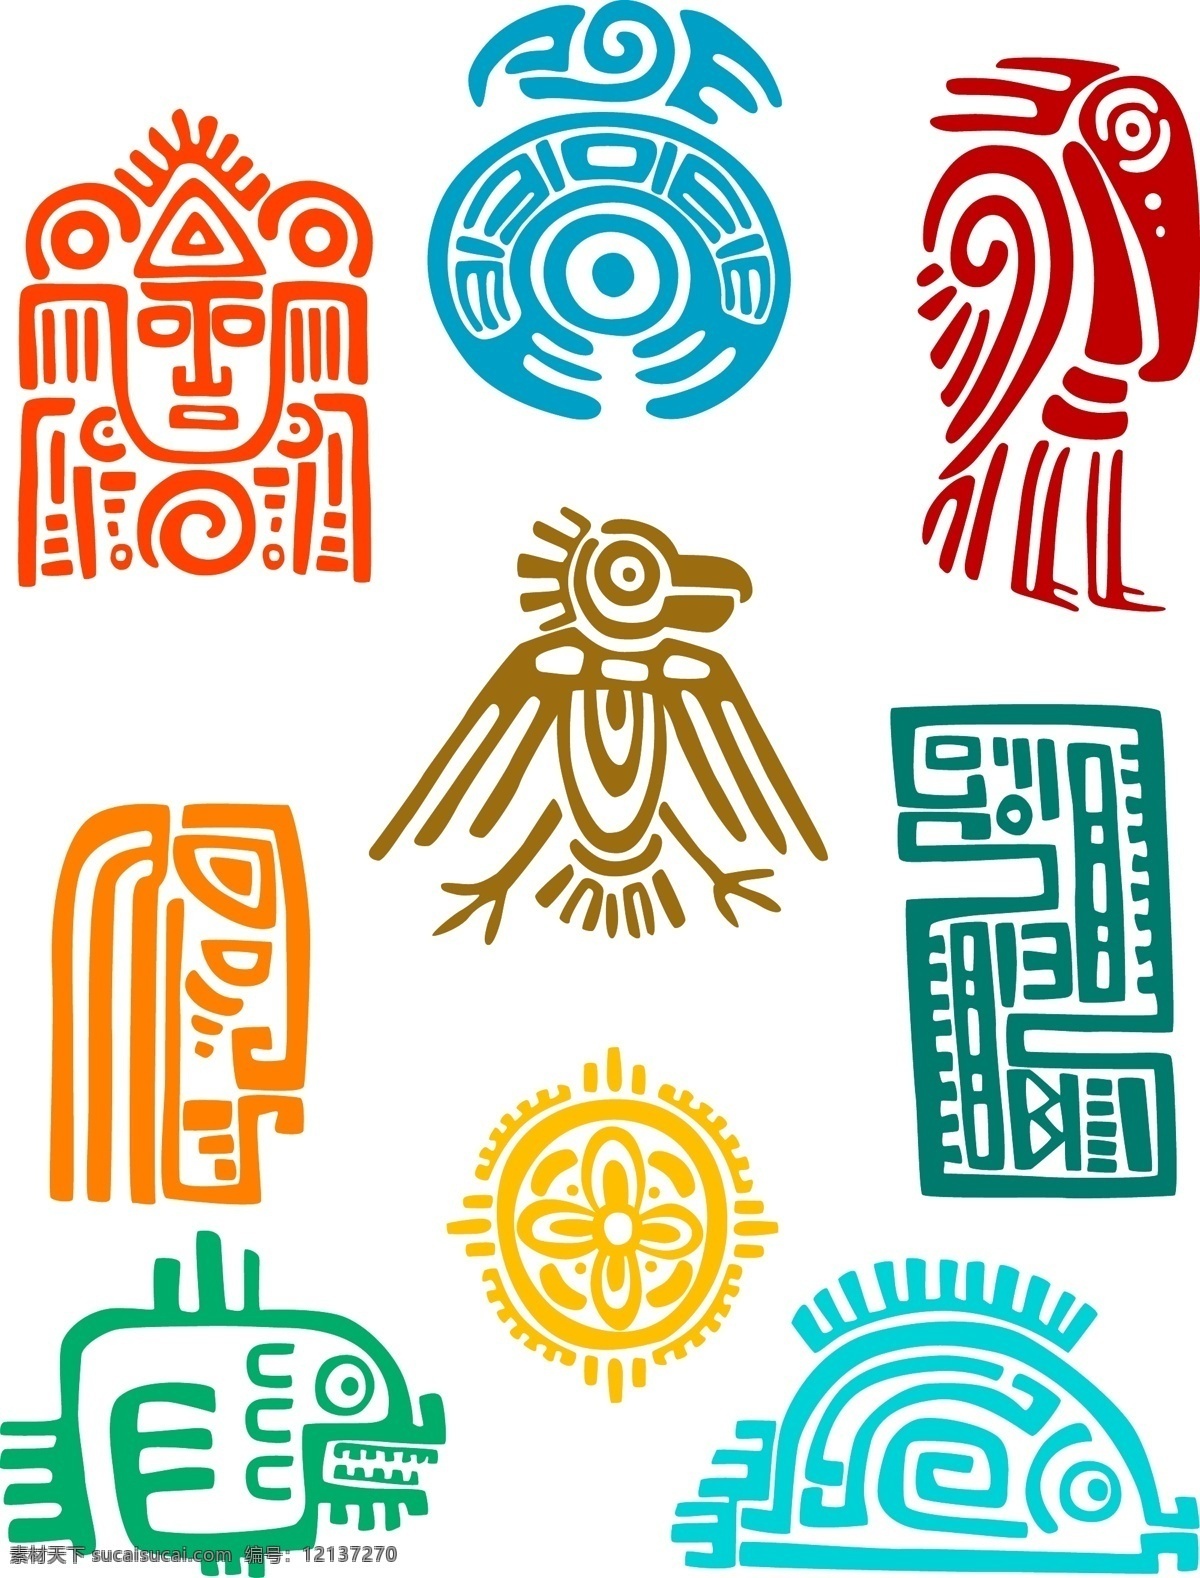 古典玛雅 图标设计 矢量素材 古老玛雅文化 的浮雕 墨西哥 古老文化 卡通浮雕 大丽菊 eps格式 图标 标签 标志图标 其他图标